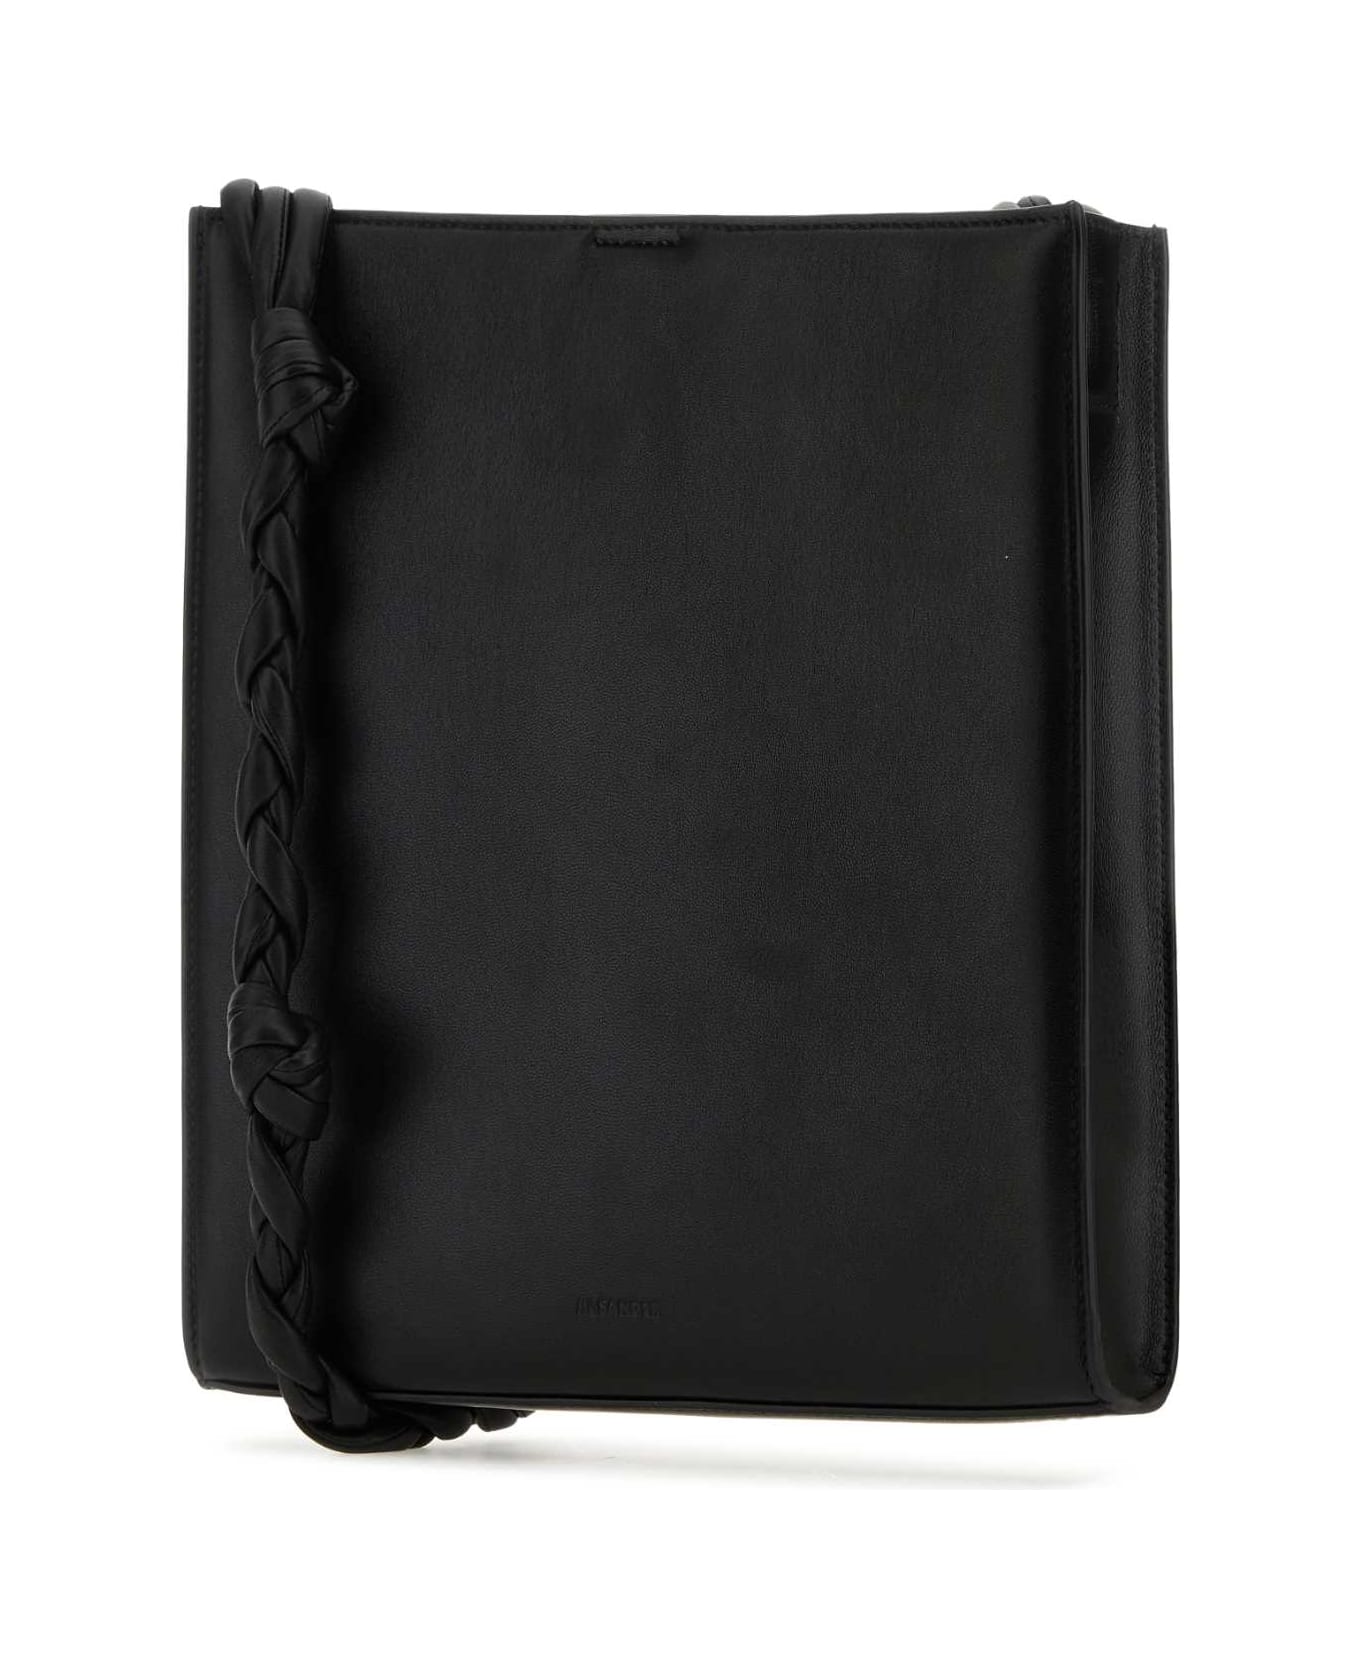 Jil Sander Black Leather Medium Tangle Shoulder Bag - 001